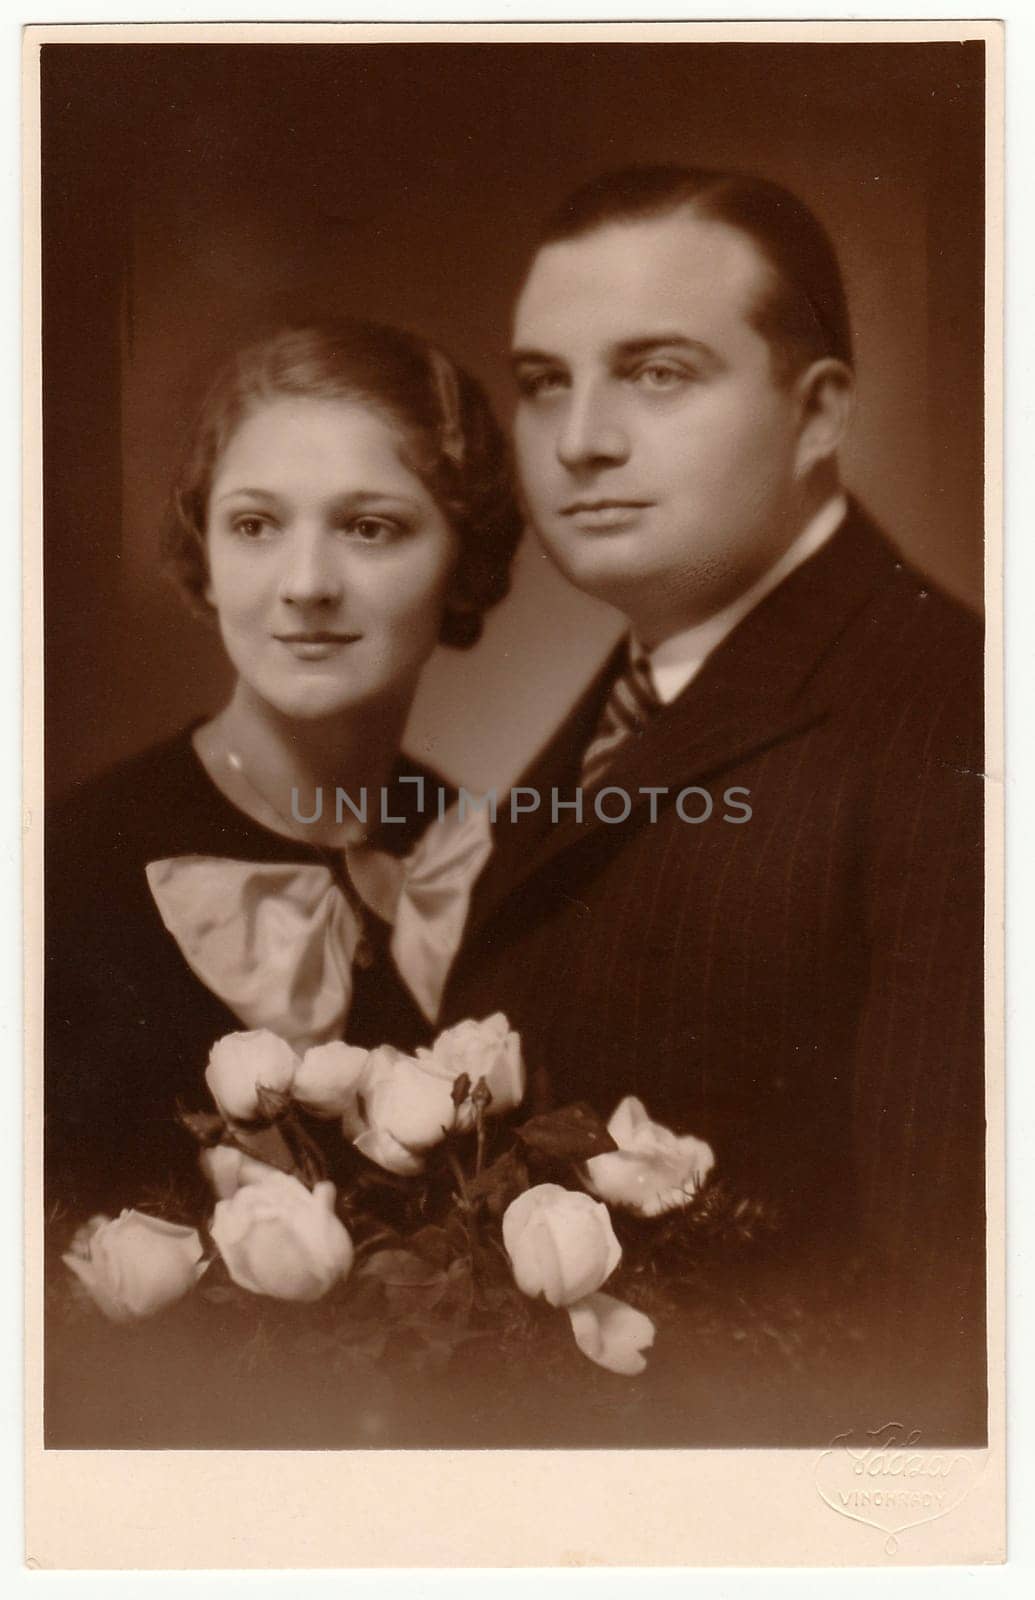 PRAGUE, THE CZECHOSLOVAK REPUBLIC - NOVEMBER 17, 1934: Vintage photo shows marrital couple.